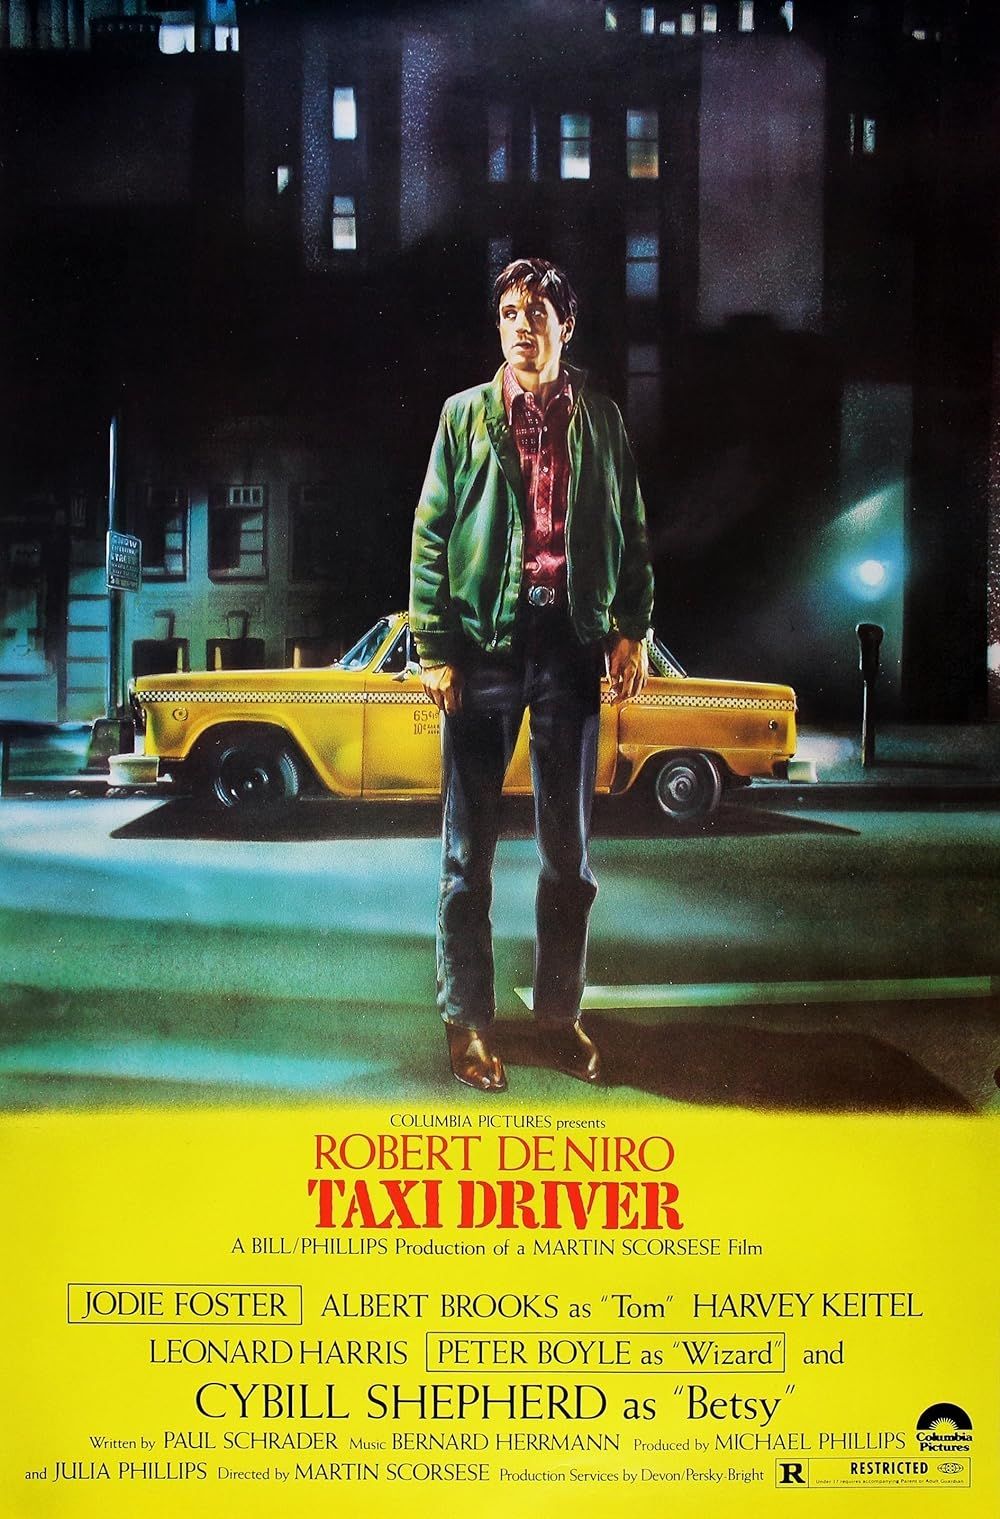 Robert DeNiro parado en una calle en la portada del cartel de Taxi Driver